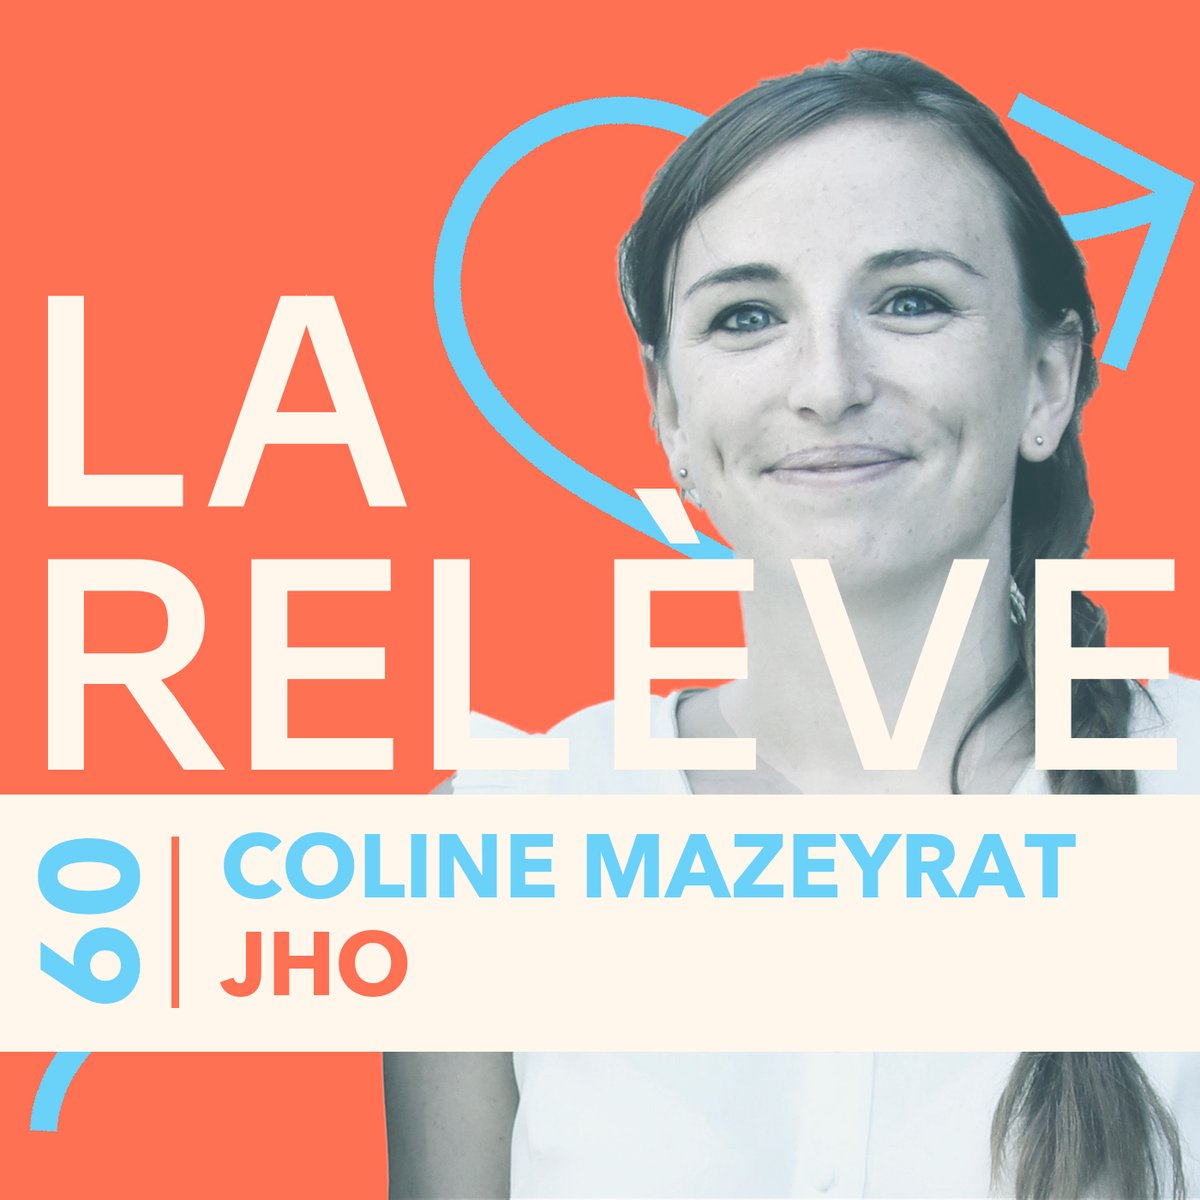 Pour le nouvel épisode du #podcast La Relève, @thiblam reçoit Coline Mazeyrat, la dynamique cofondatrice de @_jho_fr ! Pour écouter l'épisode : audmns.com/oyXRrTc #Femme #Bio